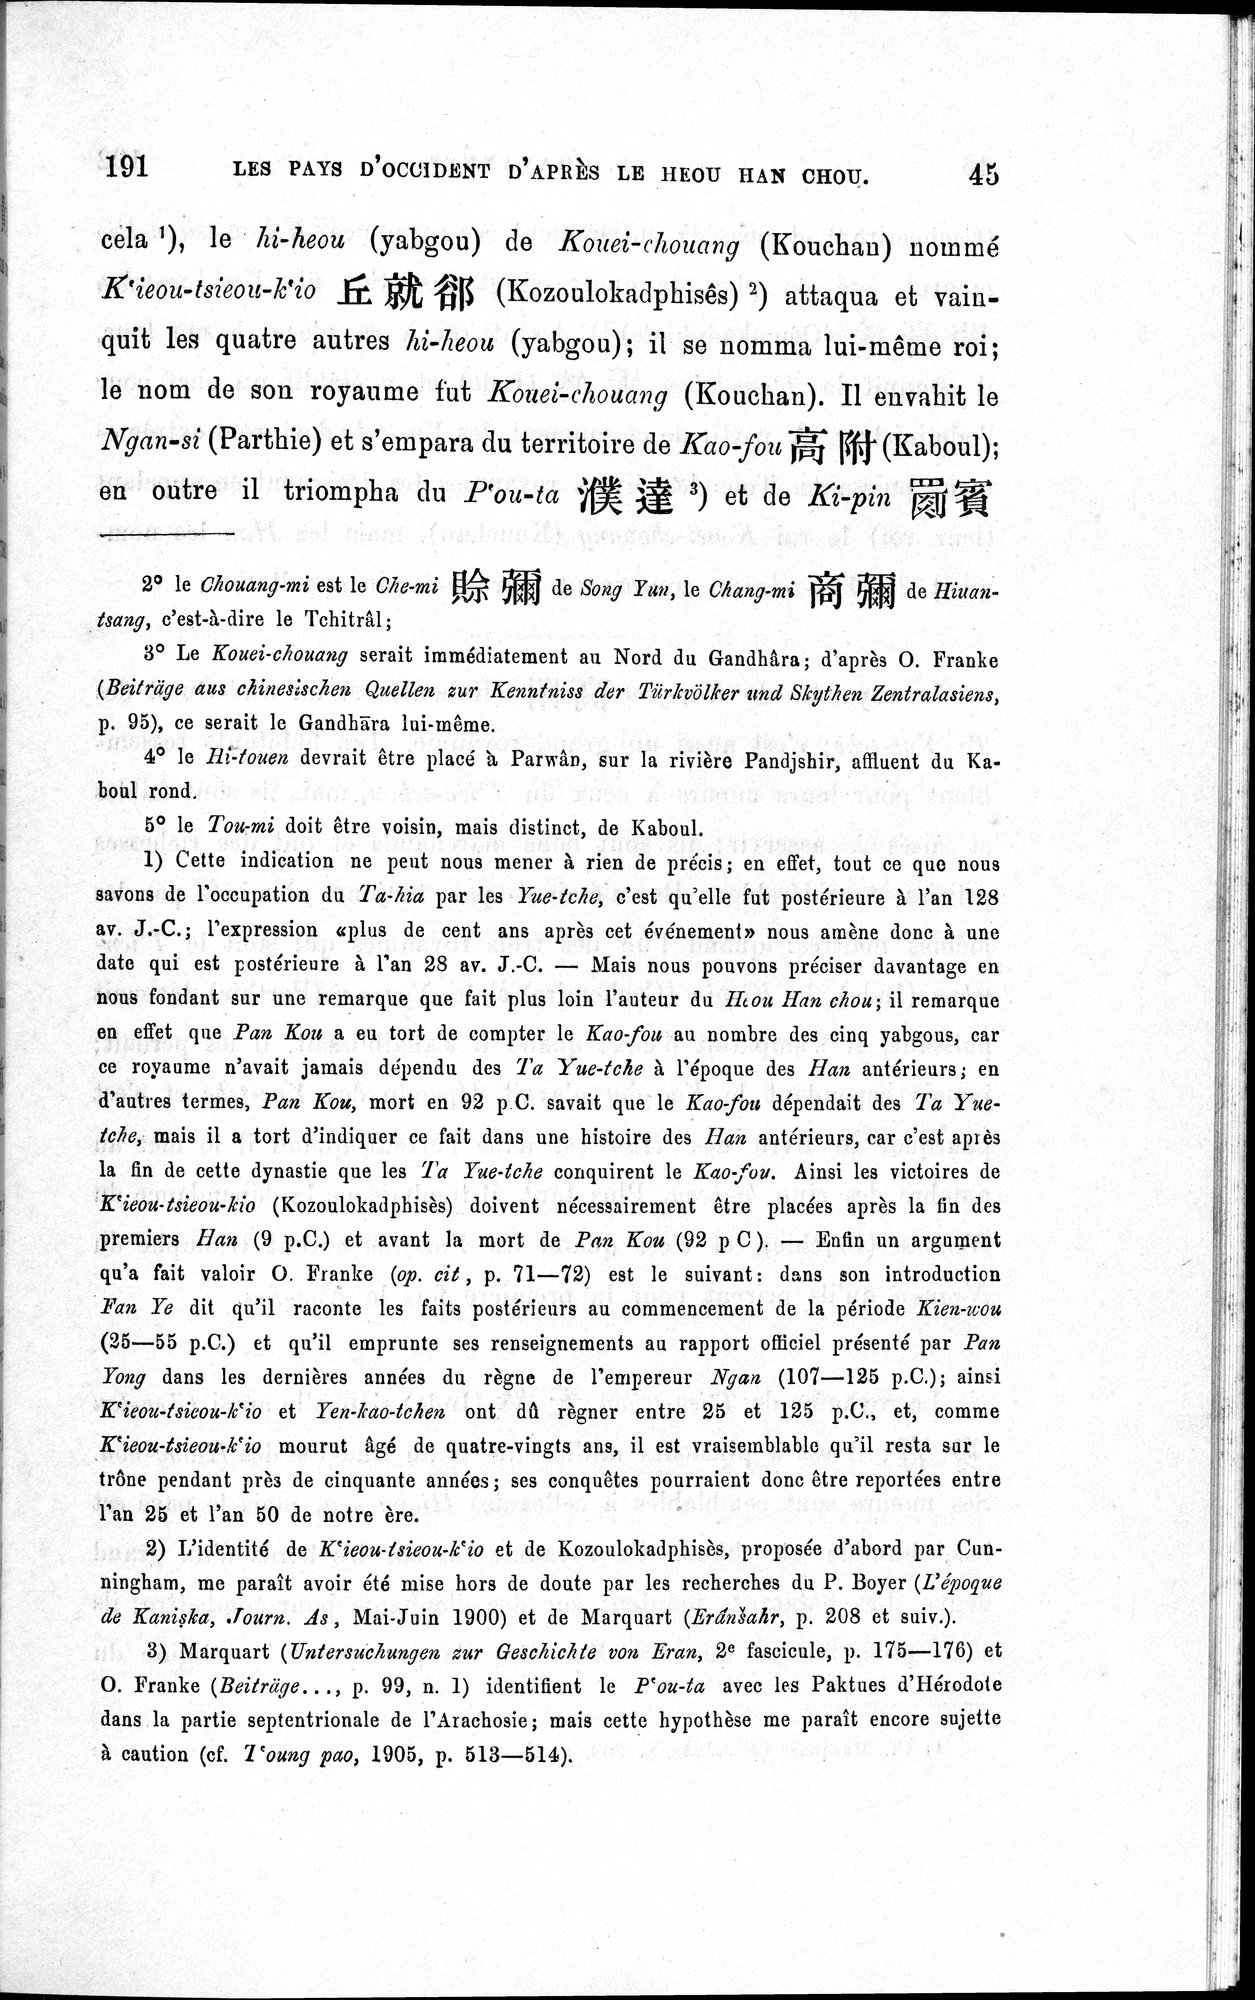 Les pays d'Occident d'après le Heou Han Chou : vol.1 / Page 53 (Grayscale High Resolution Image)